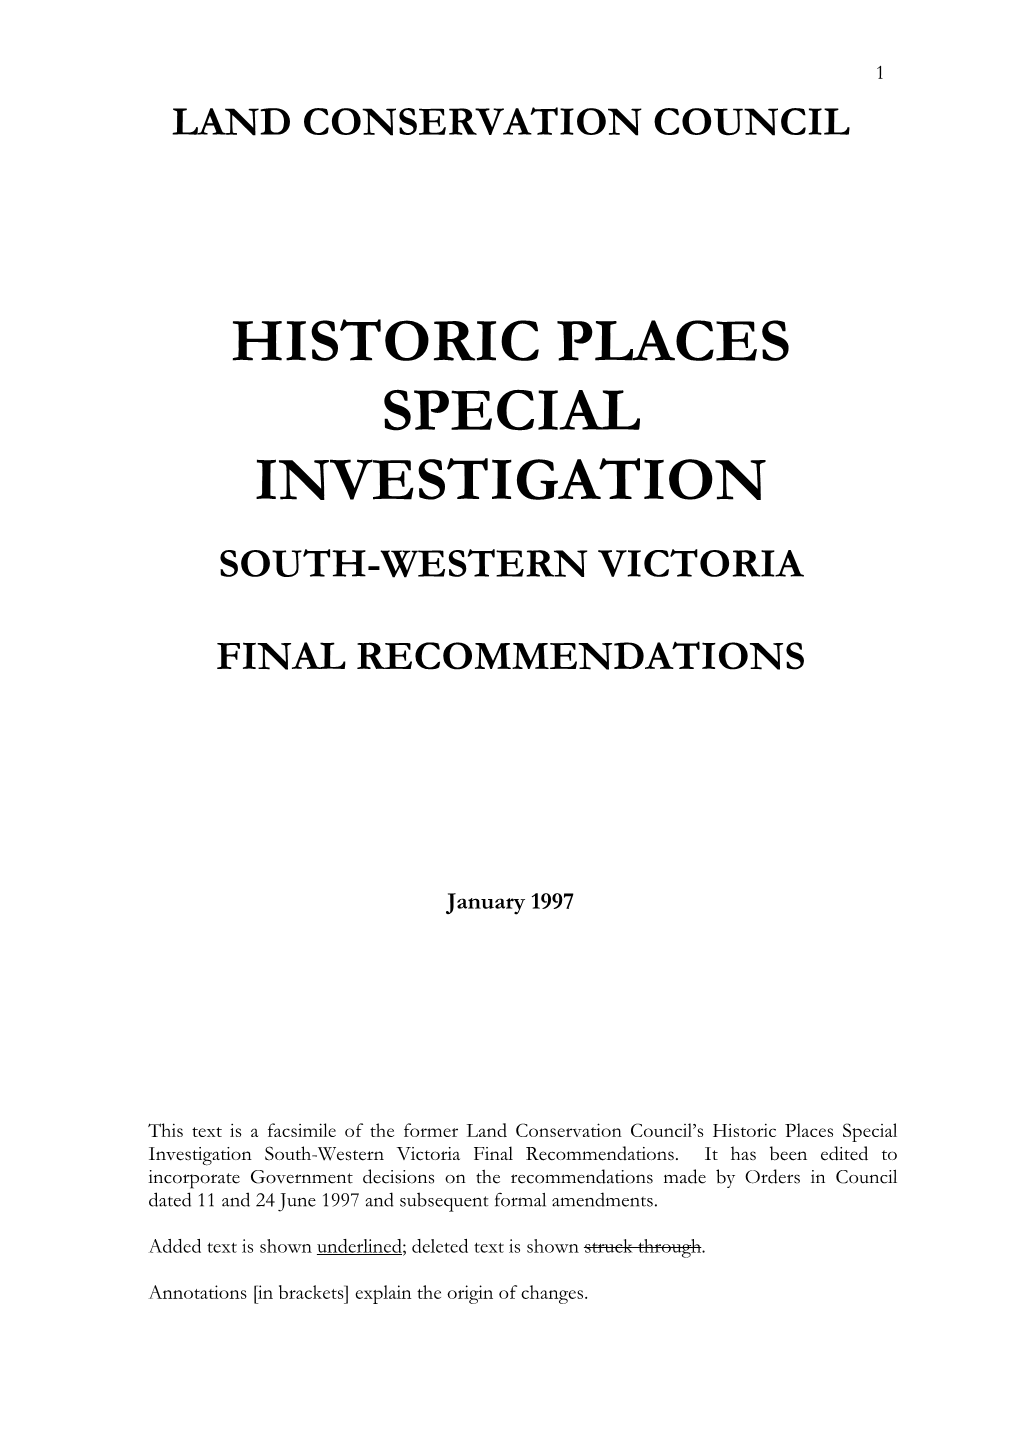 Aboriginal Affairs Victoria 179 Aboriginal Historic Places 180 Recommendations 183